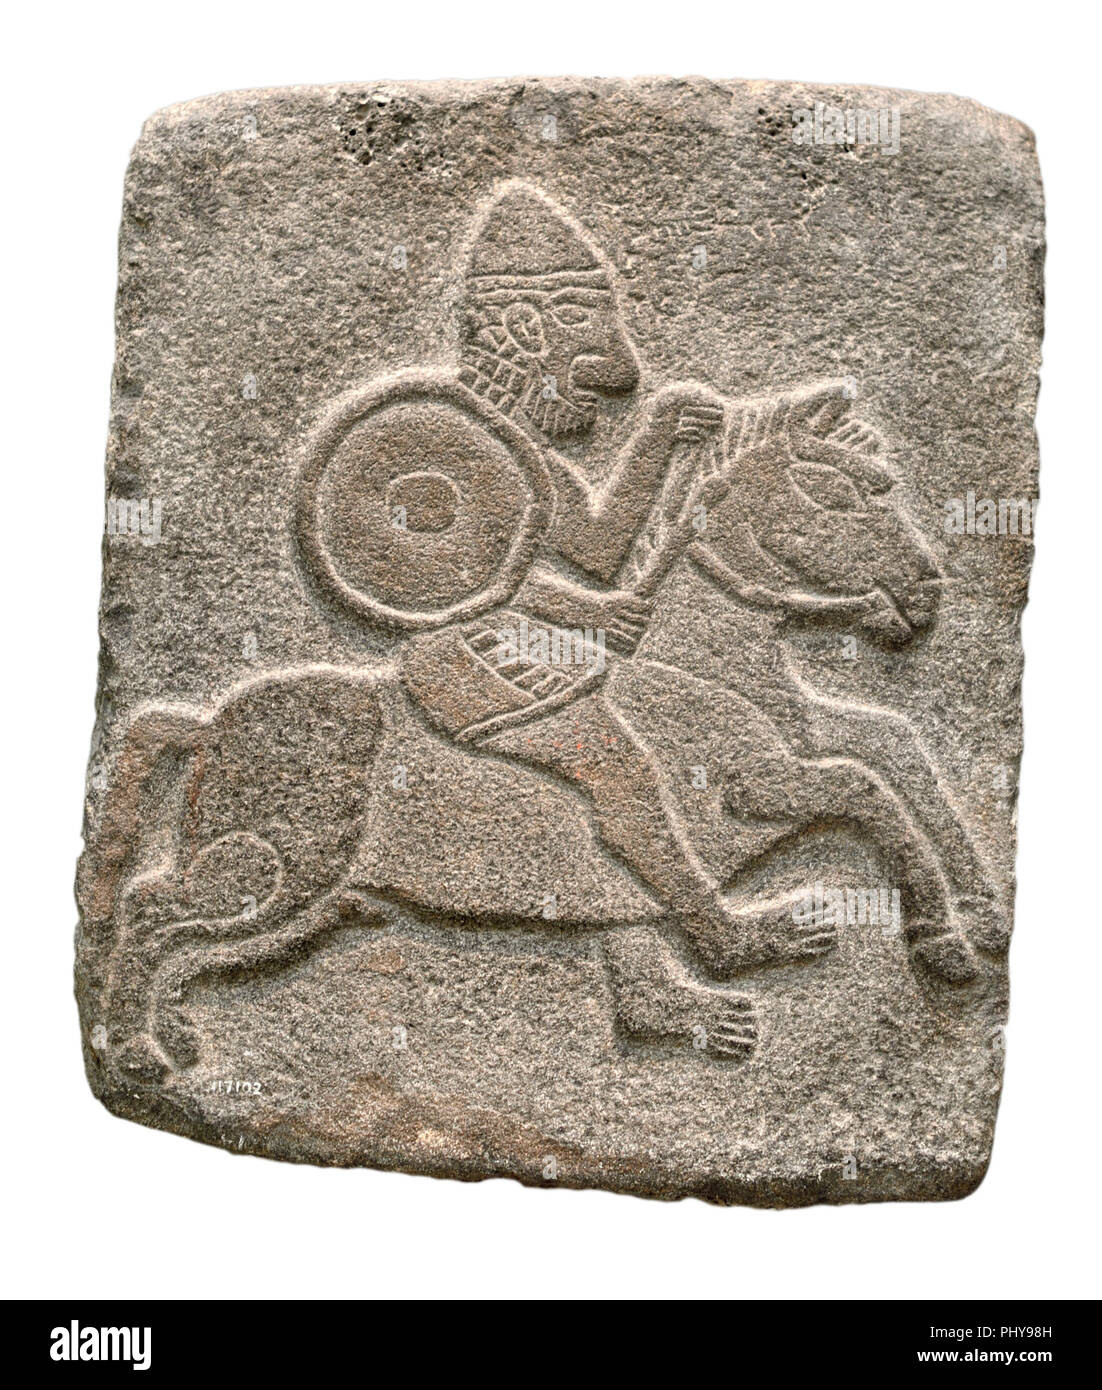 Talla de alivio del Tell Halaf, (edad del hierro en el NE de la ciudad de Siria, c1200-900BC) soldado montado. Museo Británico, Bloomsbury, Londres, Inglaterra, Reino Unido. Foto de stock